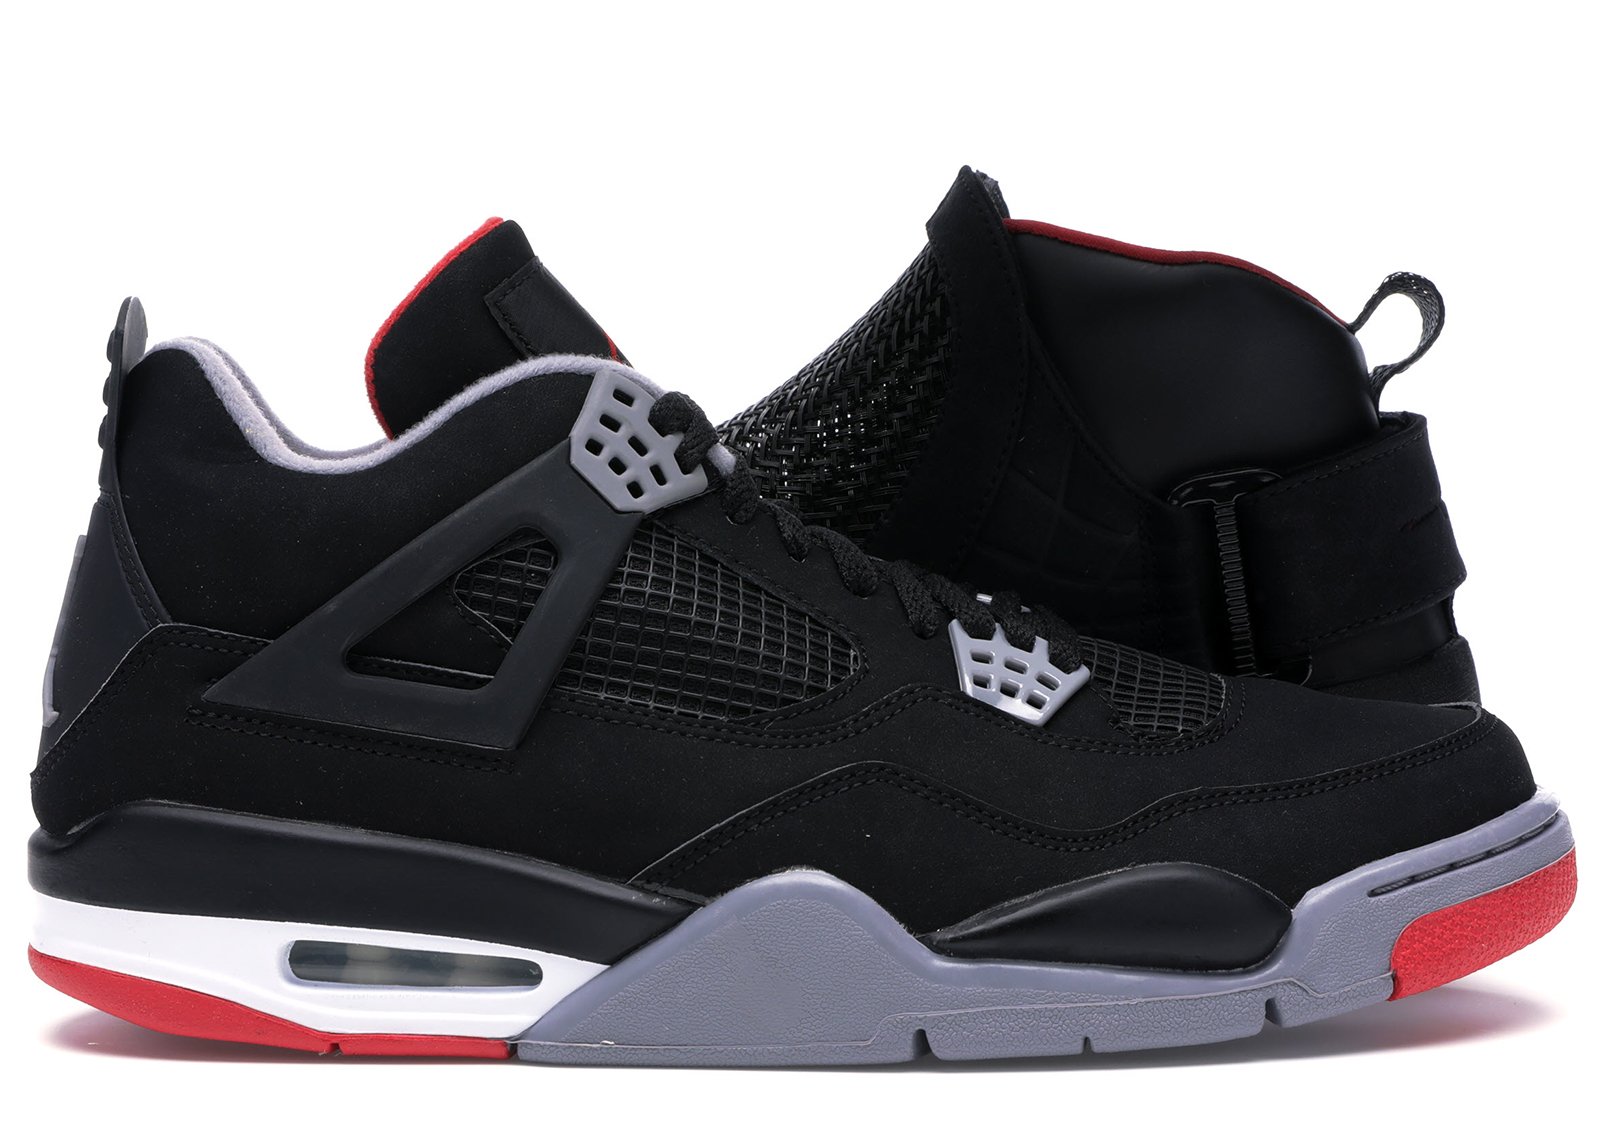 Jordan Countdown Pack 4/19 sneakers